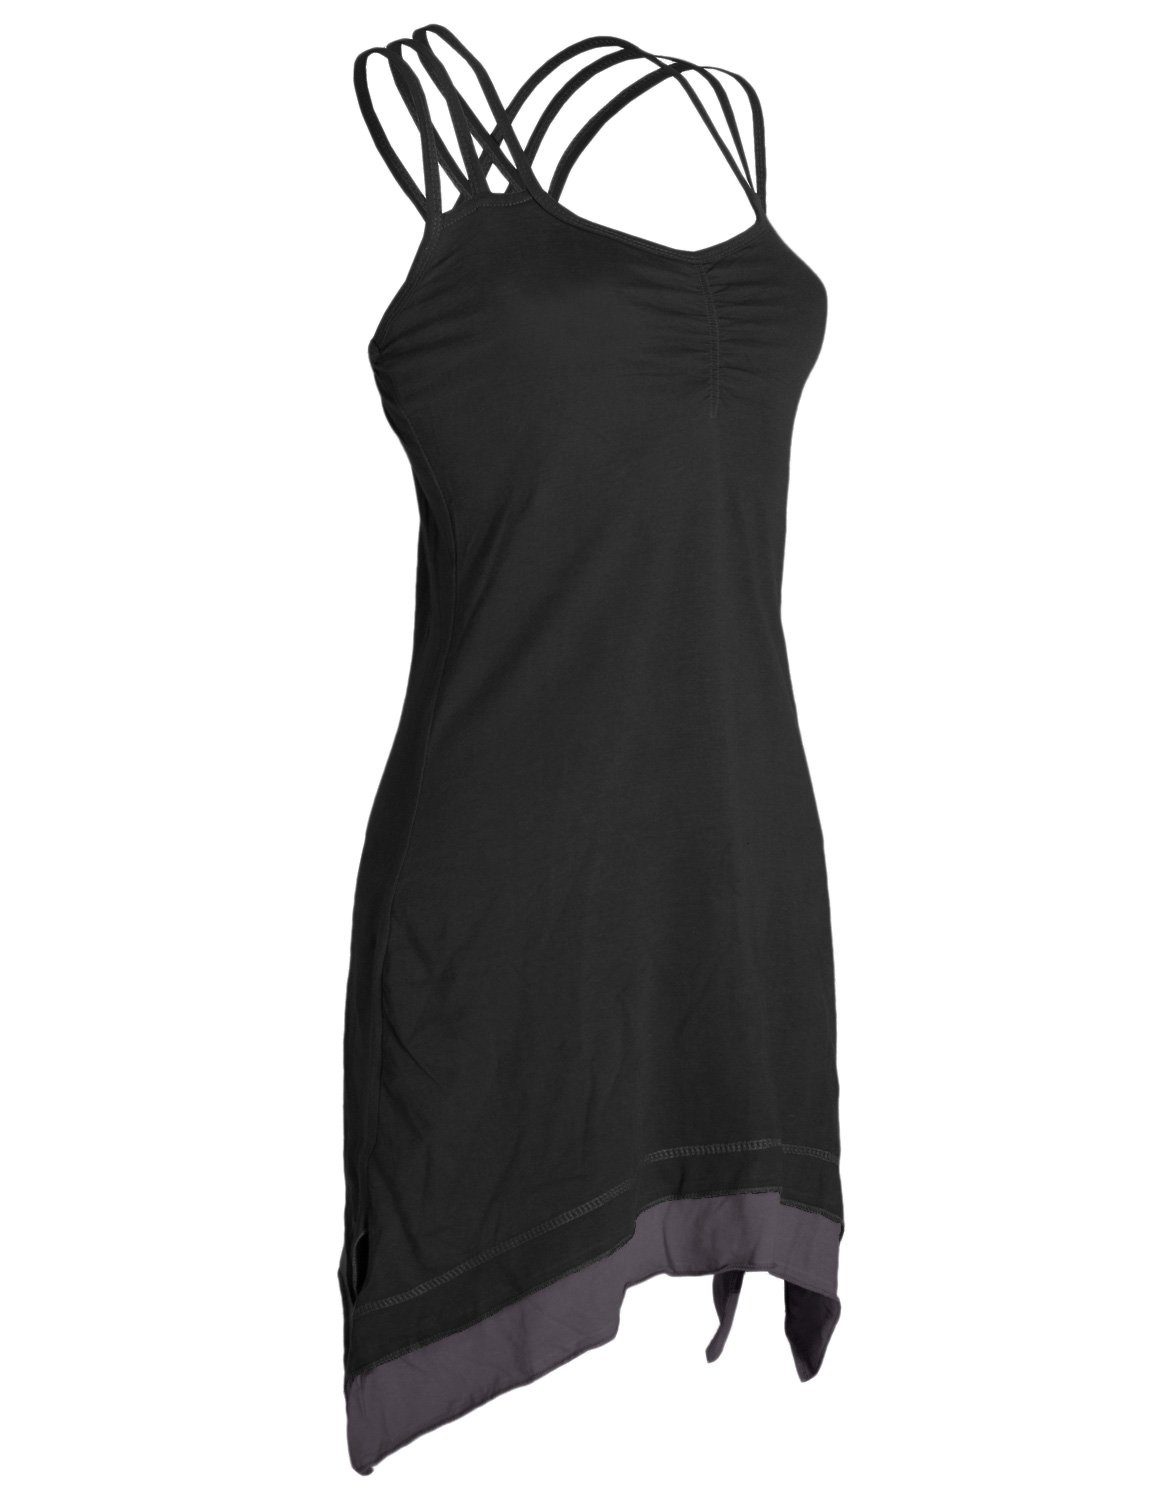 Vishes Sommerkleid Hippie, Lagenlook Boho schwarz mit Elfen, Cotton Organic Style Trägerkleid Zipfeln